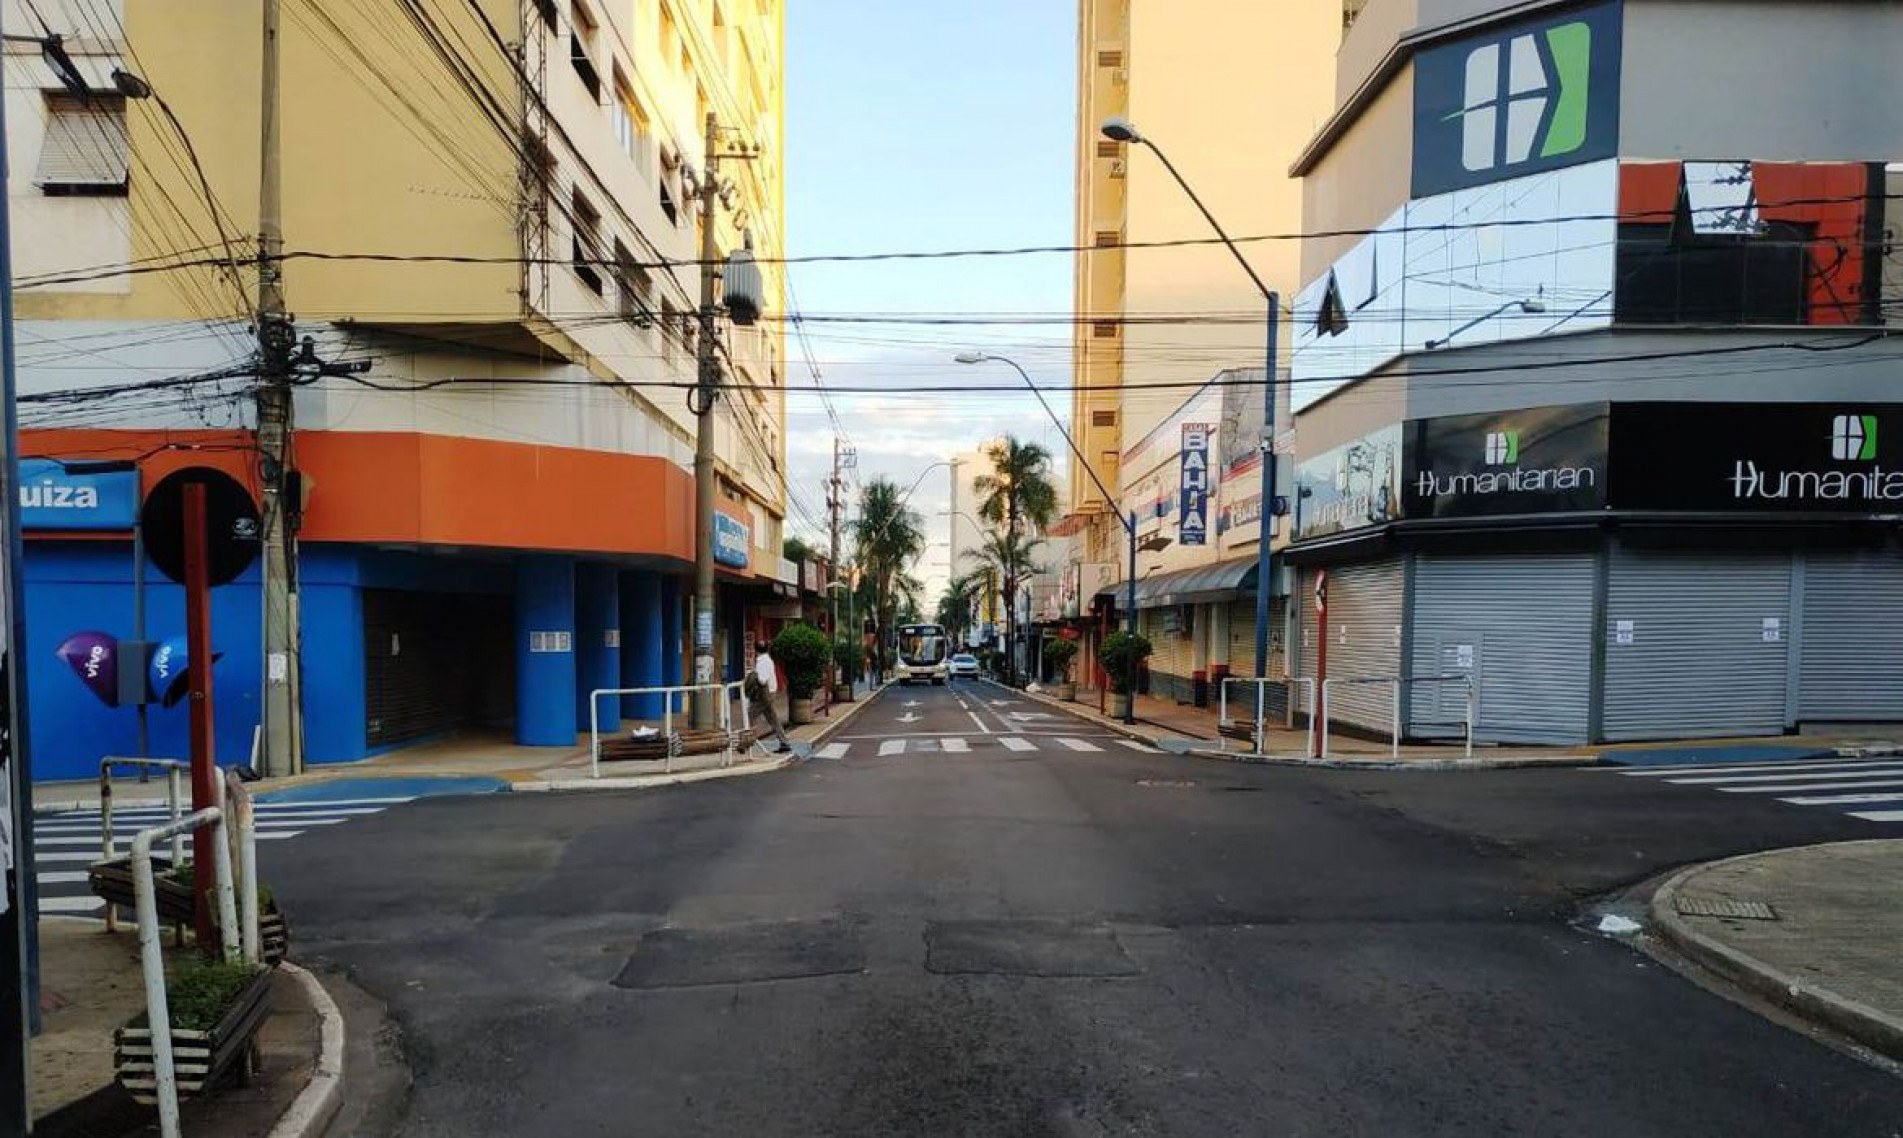 Decreto estabelece critérios para novo lockdown em Araraquara